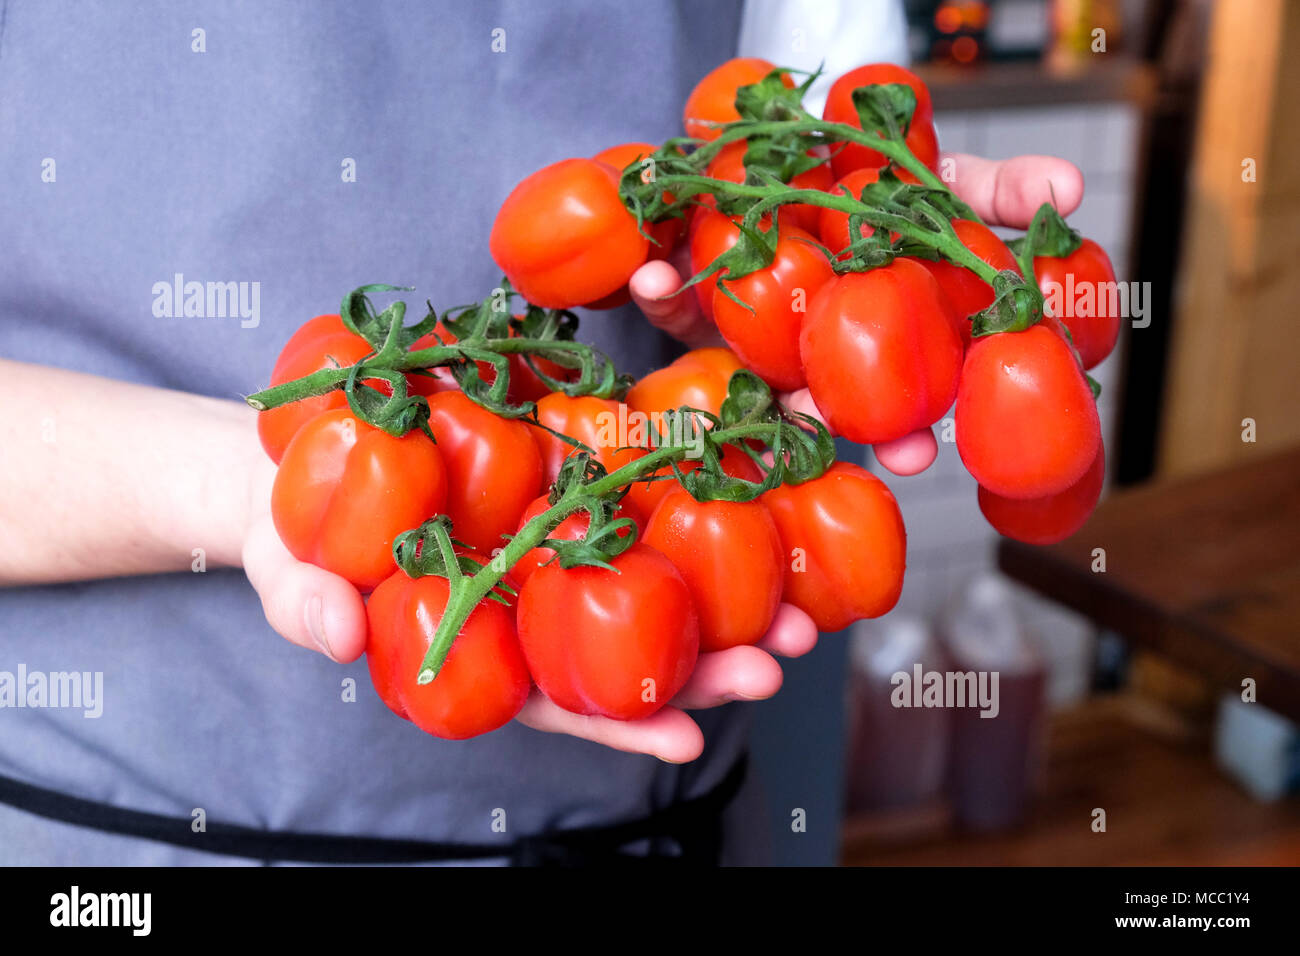 Eine Nahaufnahme Köche Hände halten ein Bündel von Red plum Tomaten auf grünen Reben ca. 24 Tomaten mit 12 in jeder Hand hinter seinen Chefs weiß und grau Apr Stockfoto